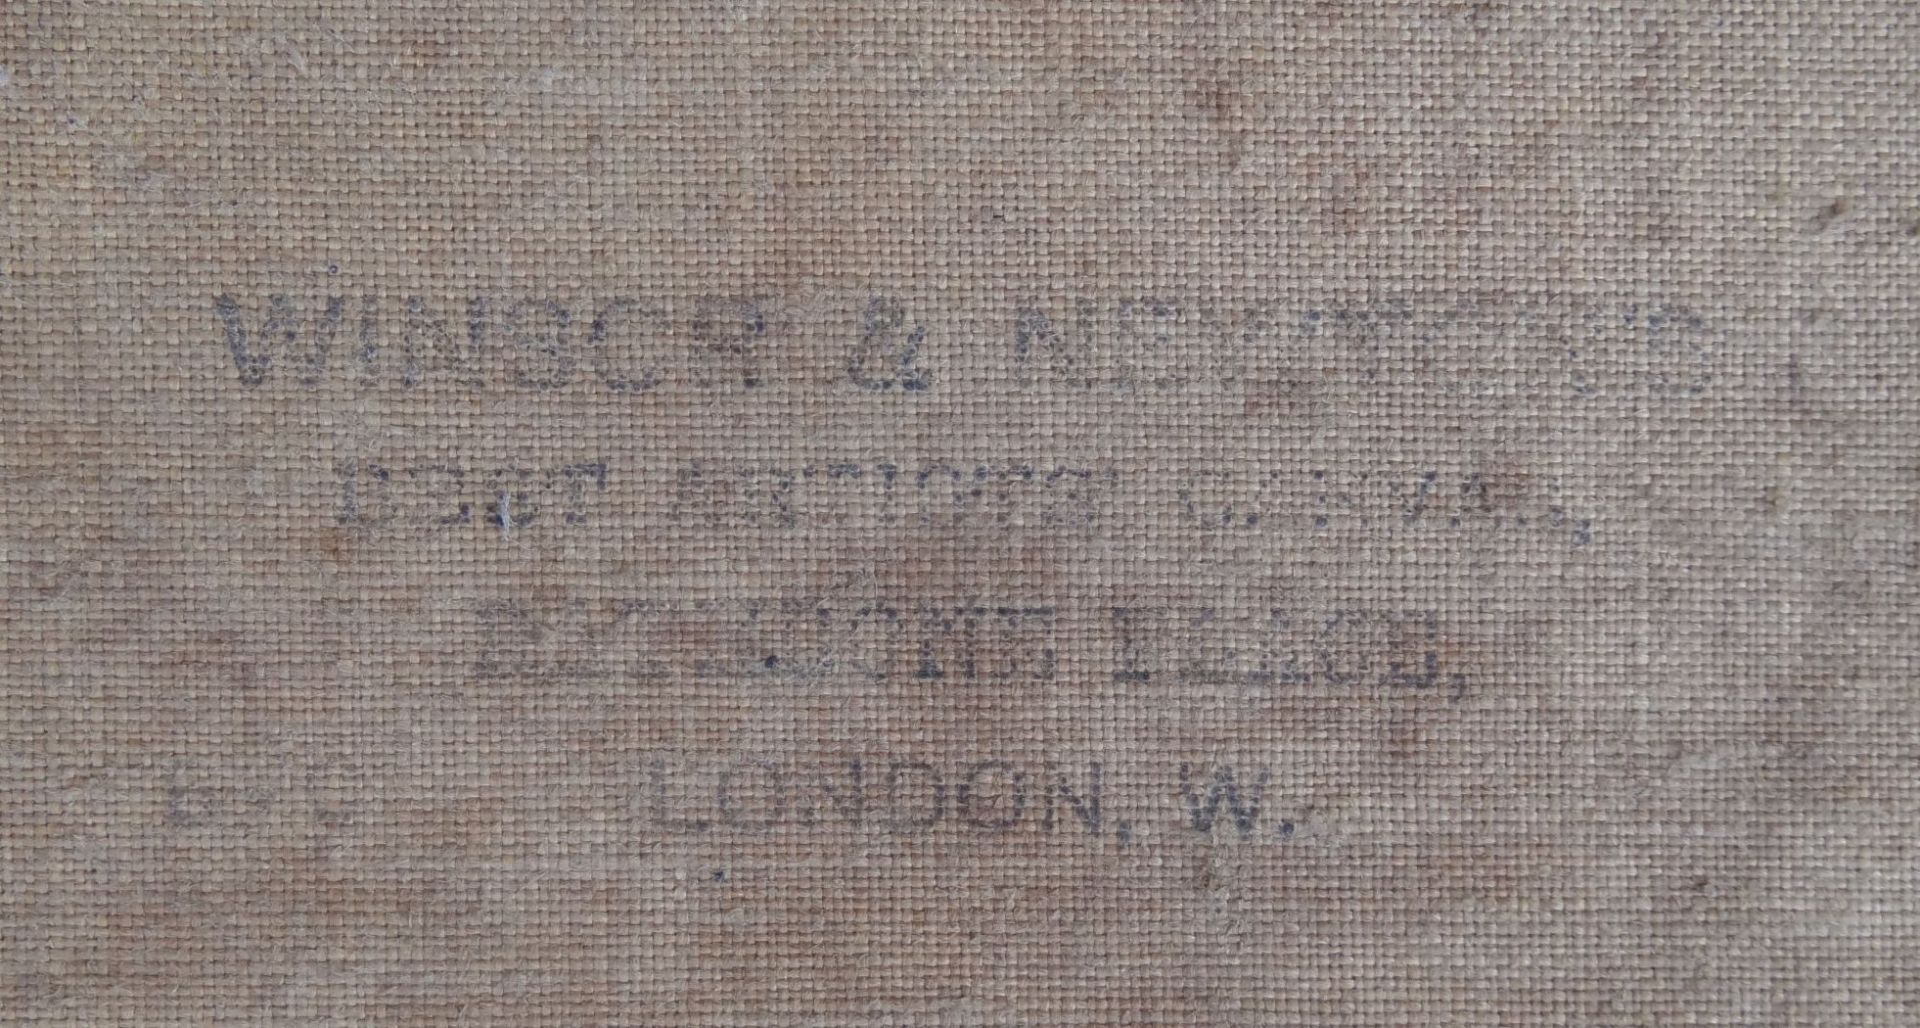 N. Barber, 1899 "Dorfansicht", Öl/Leinen, 22x29 cm, breit gerahmt, 40x47 cm,- - -22.61 % buyer's - Bild 6 aus 6